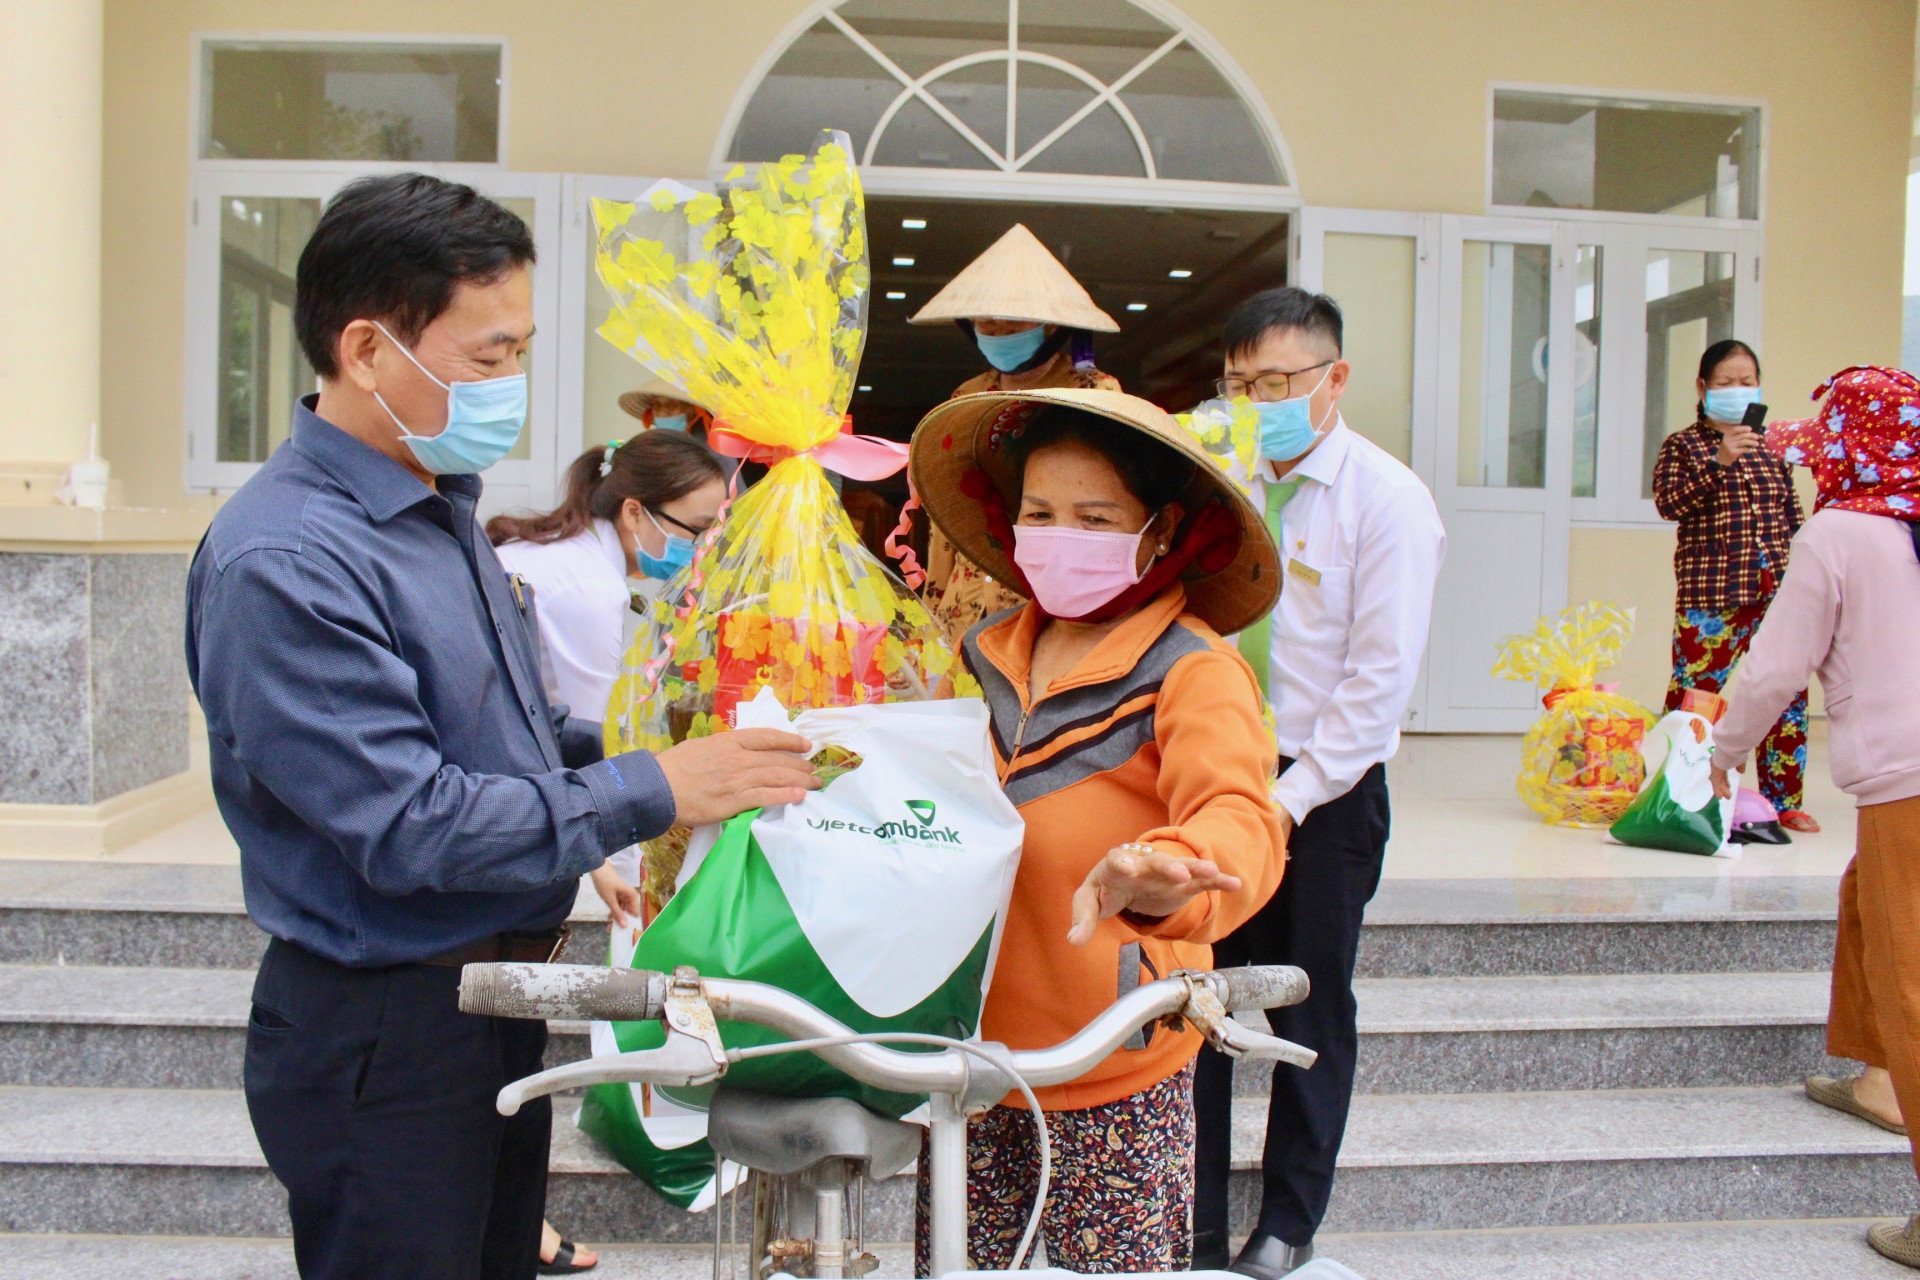 Là đơn vị đồng hành cùng Báo Khánh Hòa nhiều năm qua, Vietcombank Chi nhánh Nha Trang luôn mong muốn mang đến những món quà Xuân ấm áp cho các hộ nhân dịp Tết đến Xuân về.